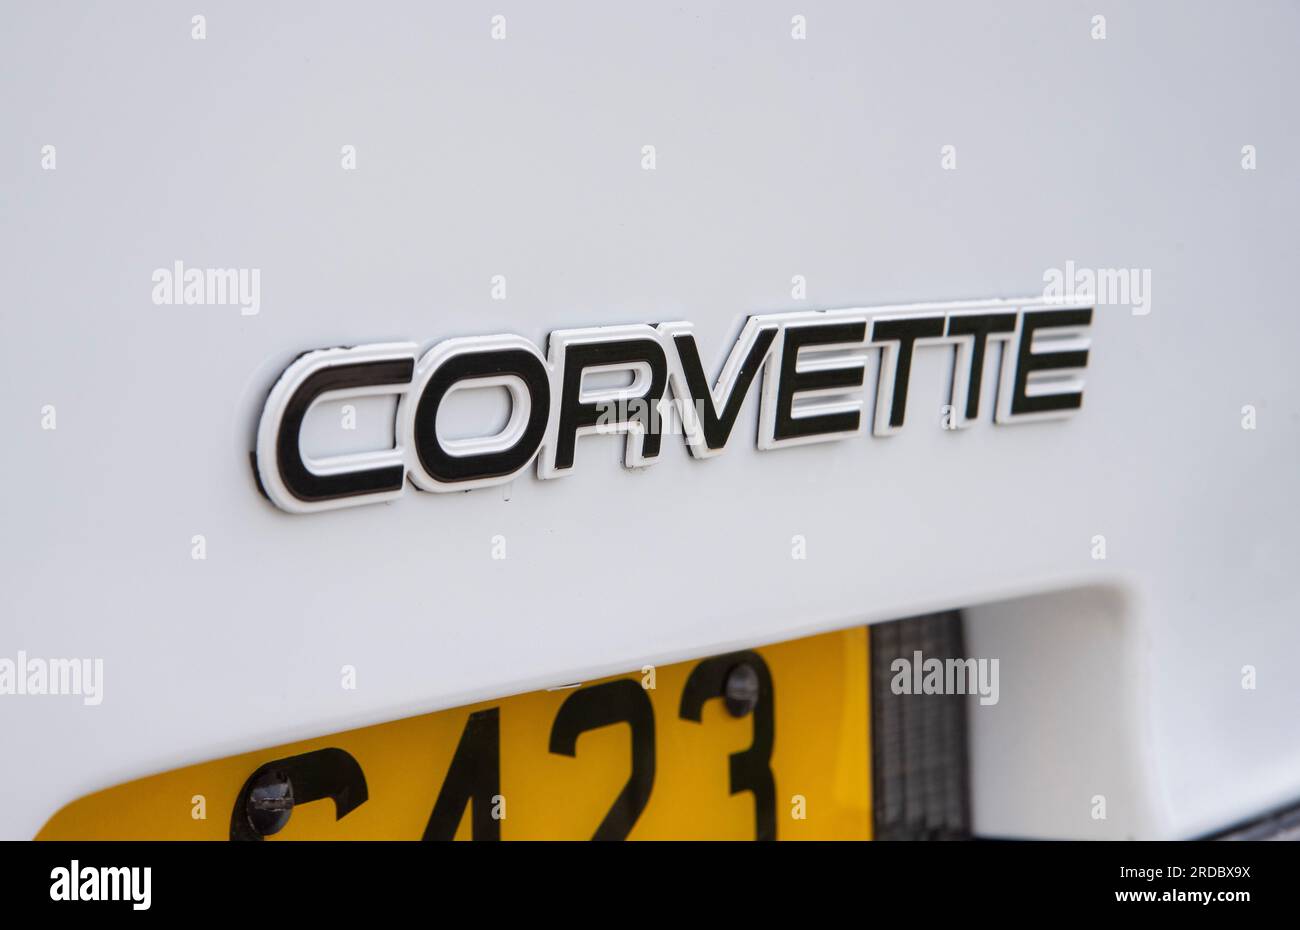 1989 C4 Corvette, auto sportiva V8 americana Foto Stock